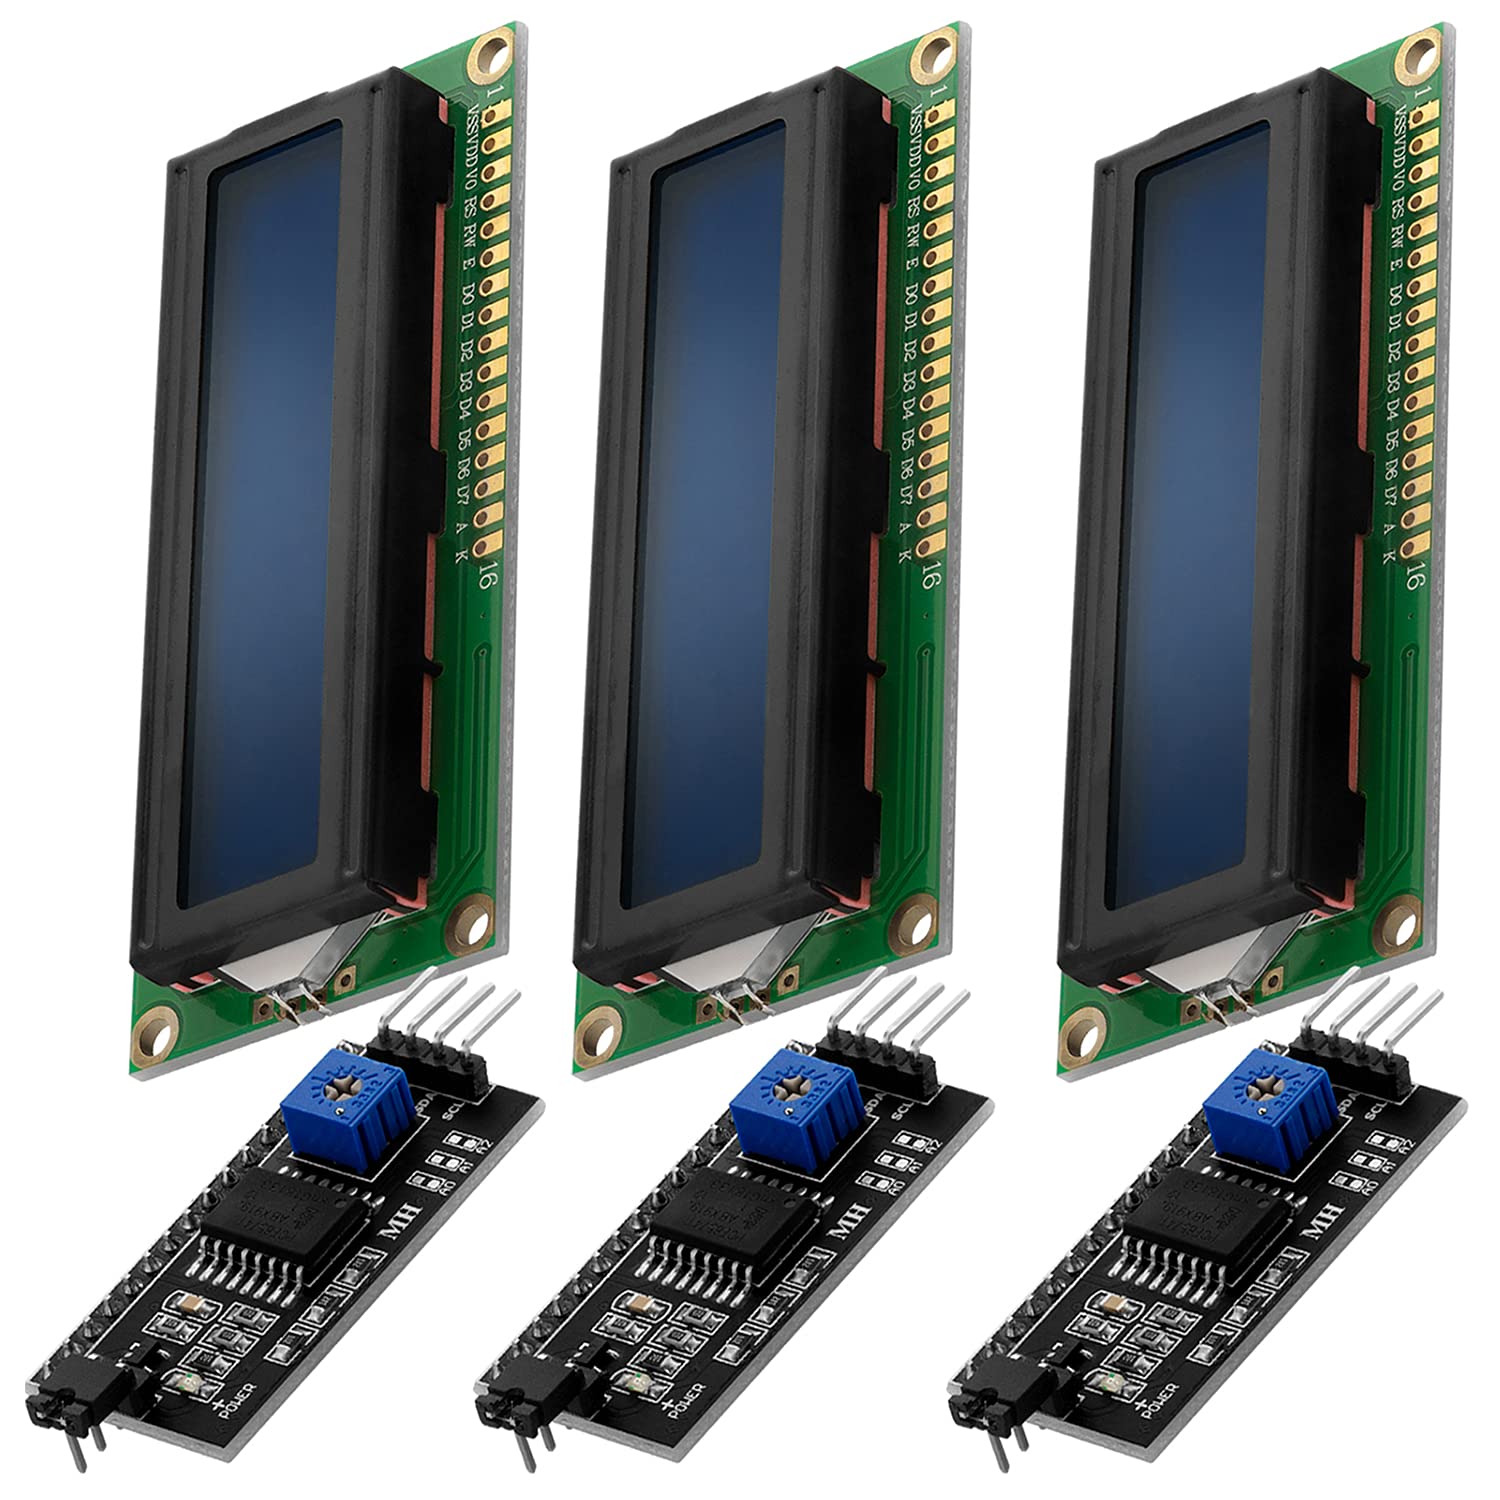 Màn hình LCD 16 x 2 HD44780: Chiêm ngưỡng màn hình LCD 16 x 2 HD44780, hiển thị thông tin chính xác và chi tiết. Với độ phân giải cao và độ sáng tuyệt vời, sẽ rất hữu ích cho các dự án điện tử của bạn. Hãy tham khảo sản phẩm và các phụ kiện để tận hưởng những trải nghiệm kỹ thuật số mới mẻ.